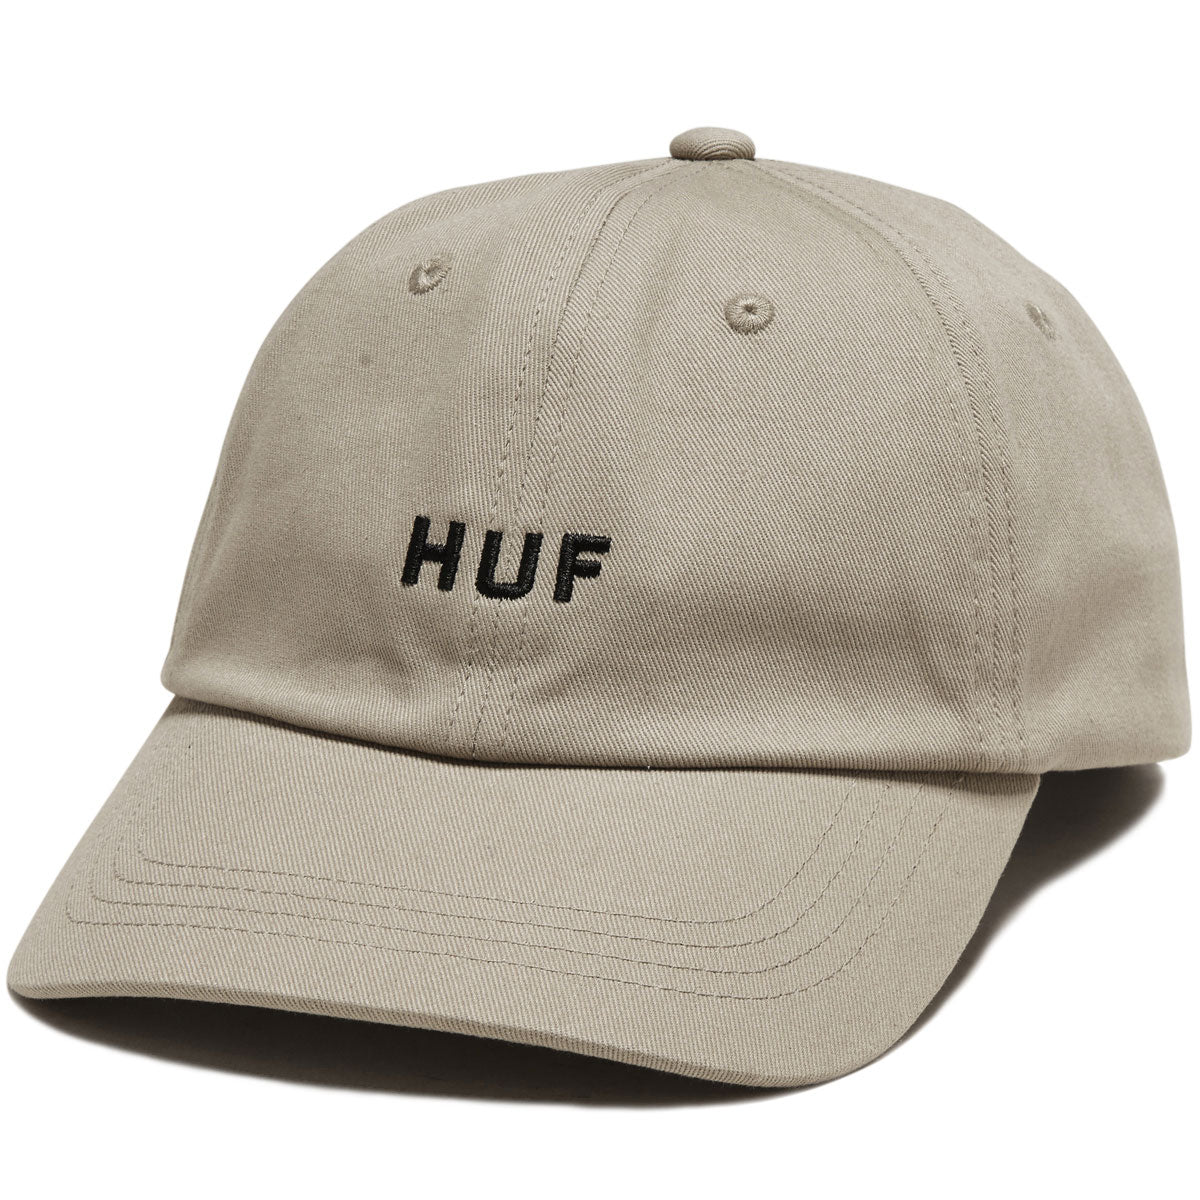 HUF Set Og Cv 6 Panel Hat - Oatmeal image 1